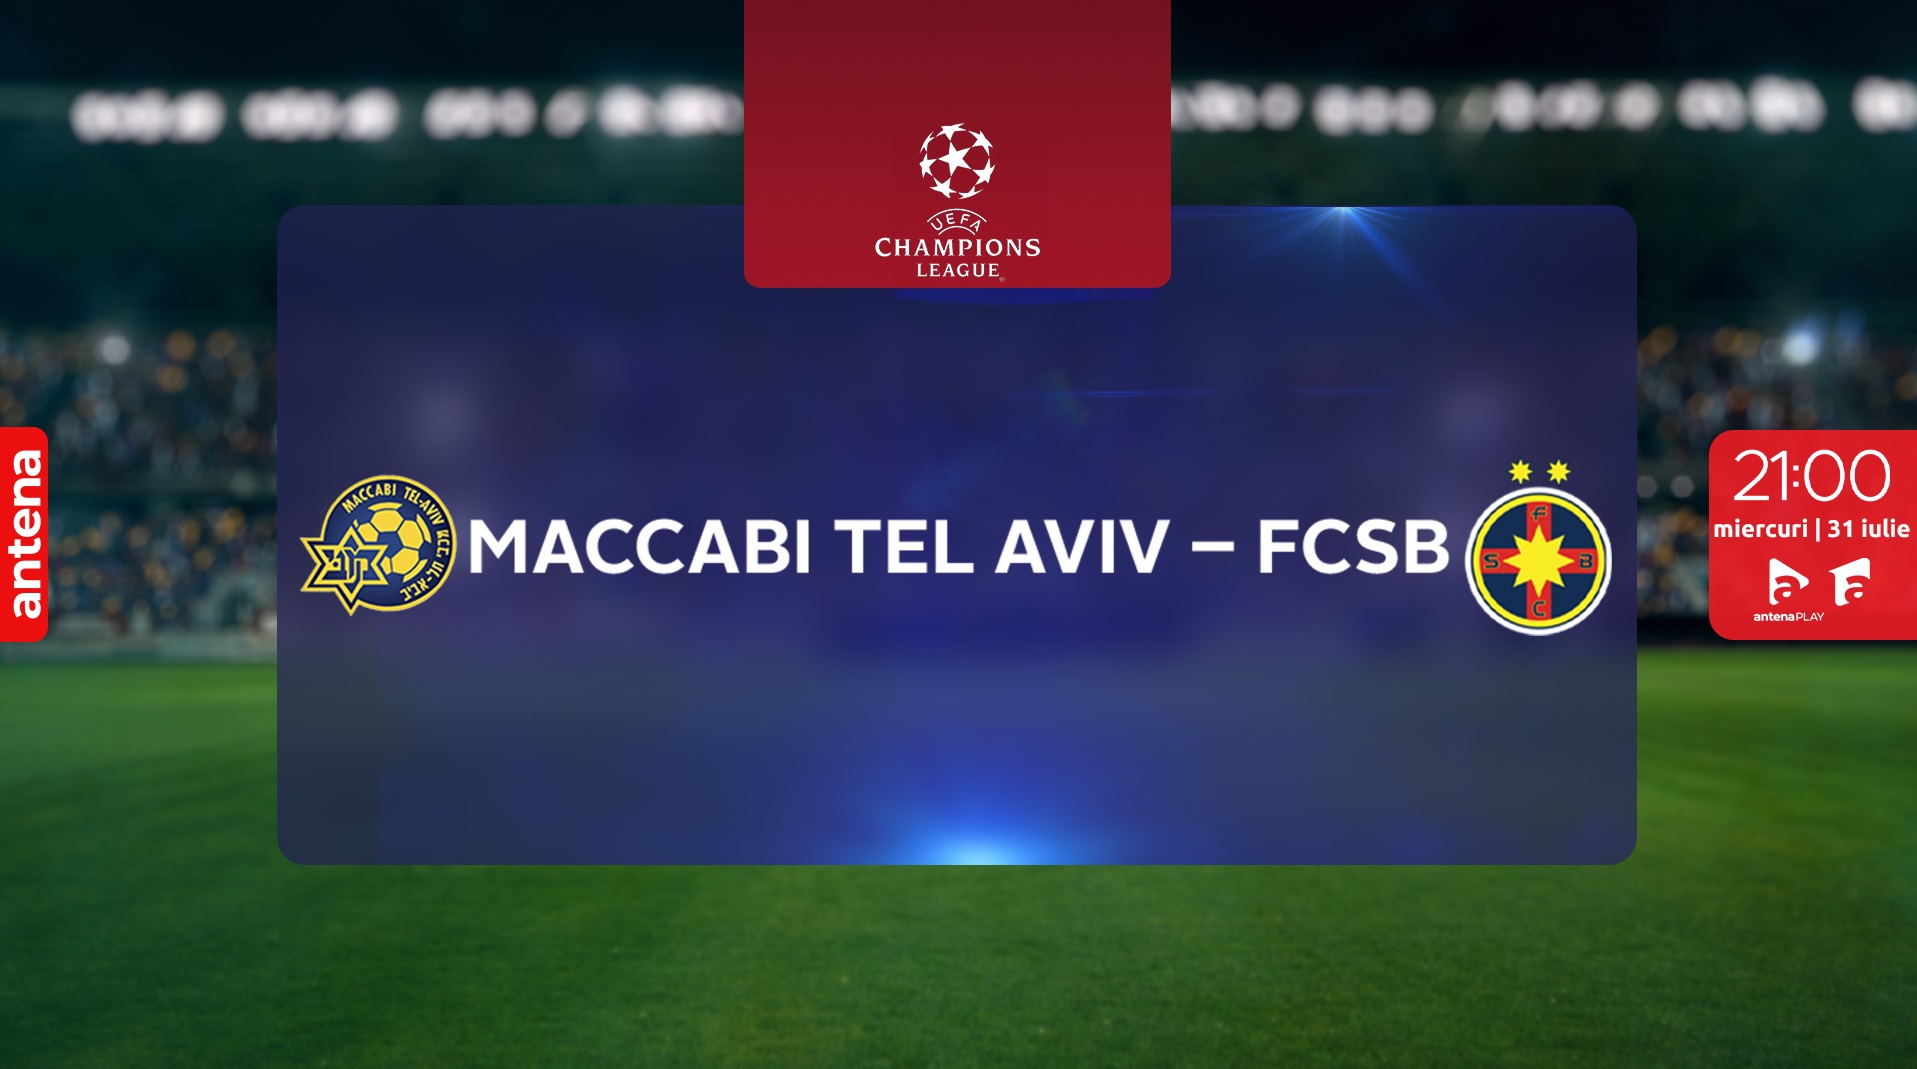 Meciul decisiv Maccabi Tel Aviv – FCSB se vede în direct la Antena 1 şi în AntenaPLAY, miercuri, 31 iulie, de la 21.00